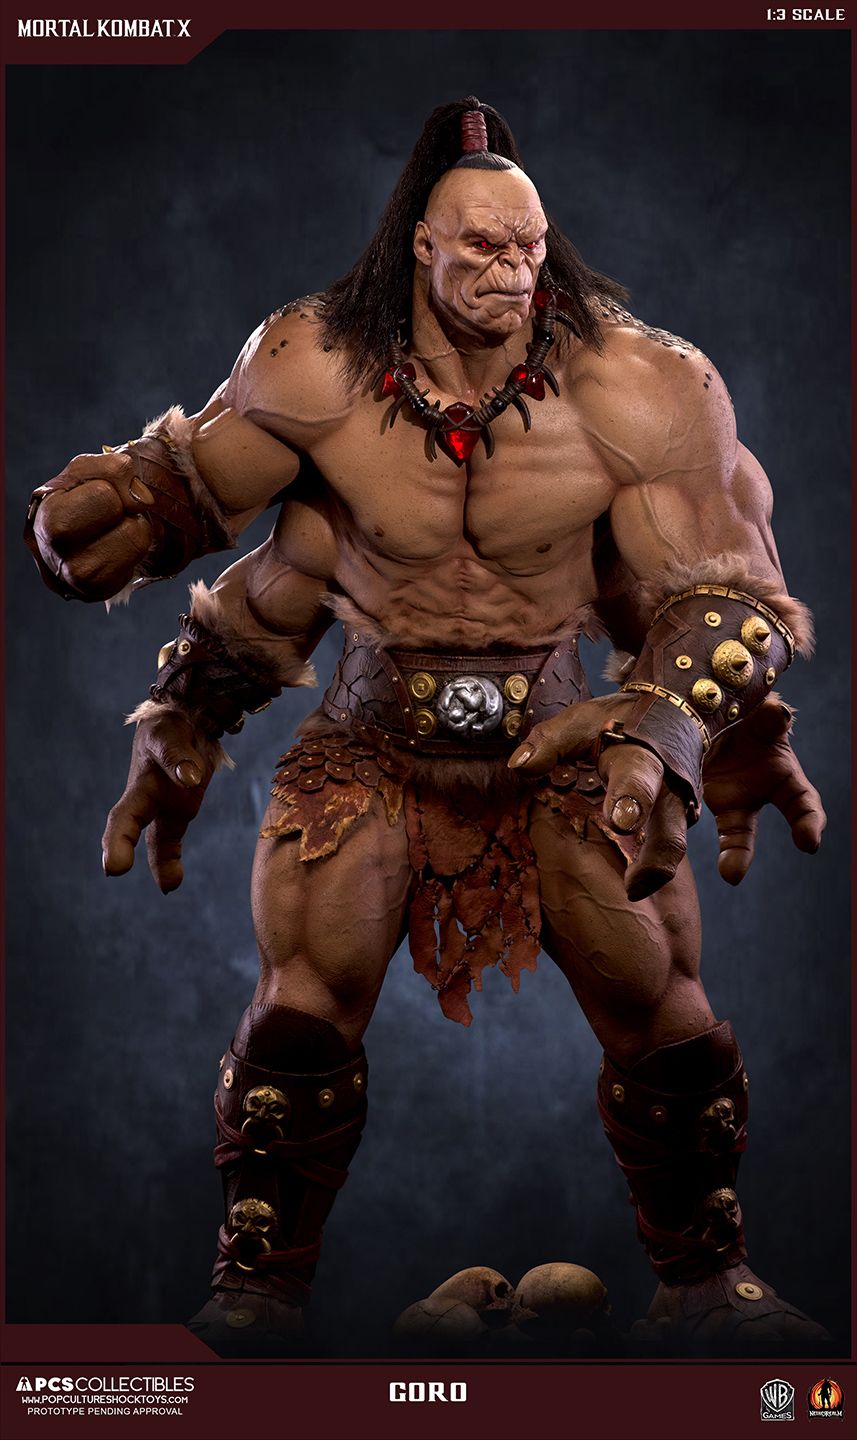 Mortal Kombat X Goro Statue Photo And Pre Order Info